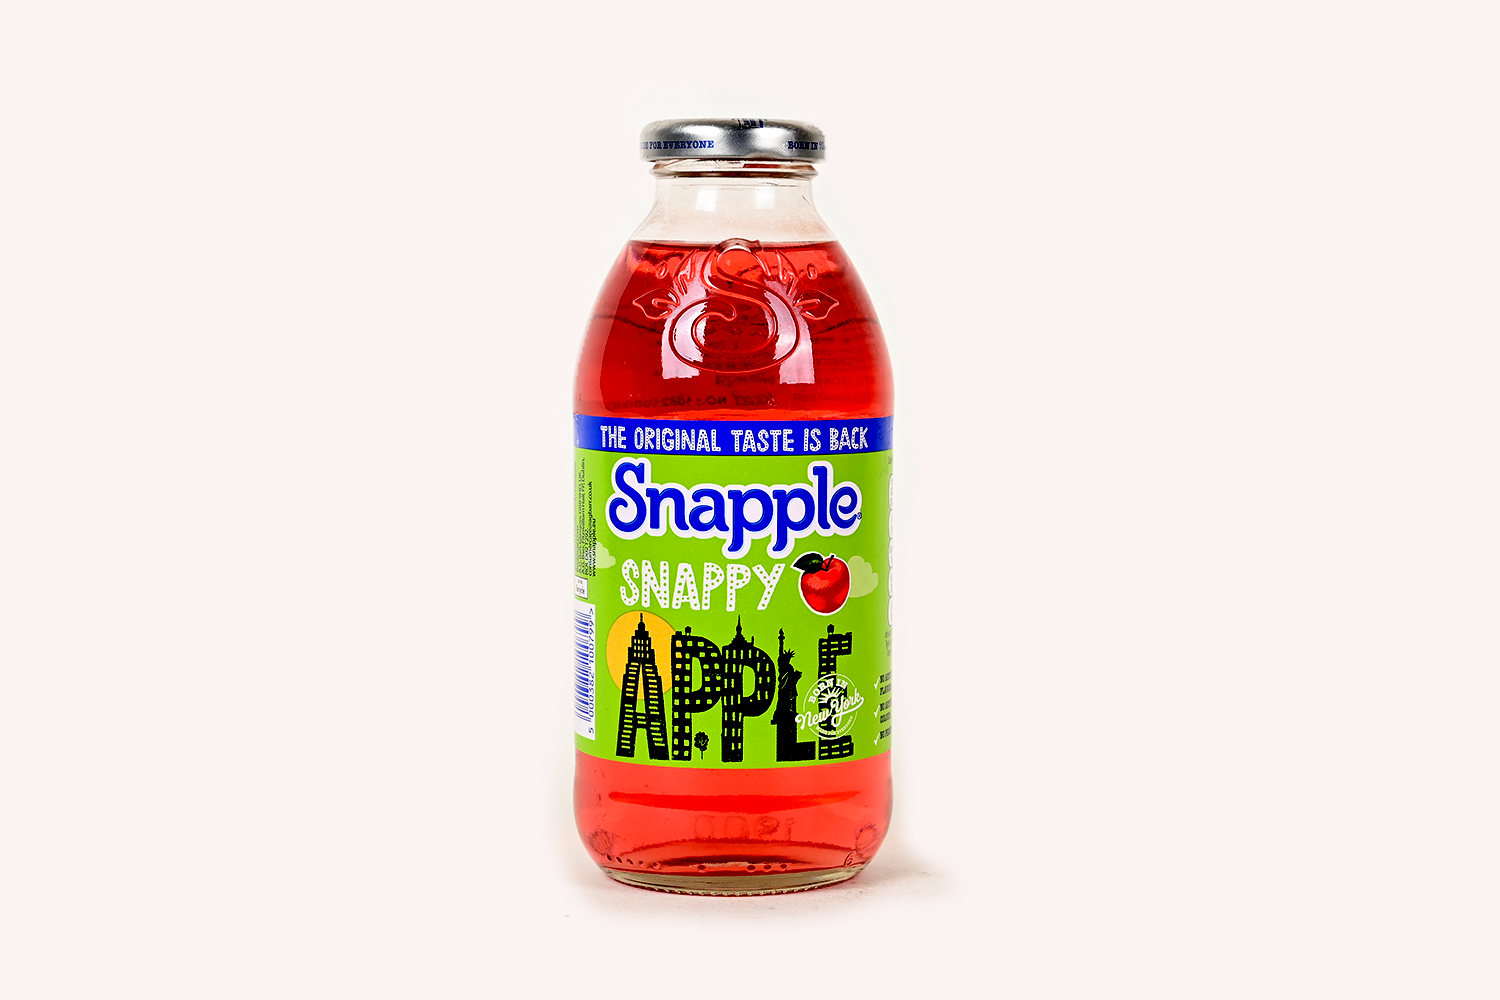 Snapple Apple Juice